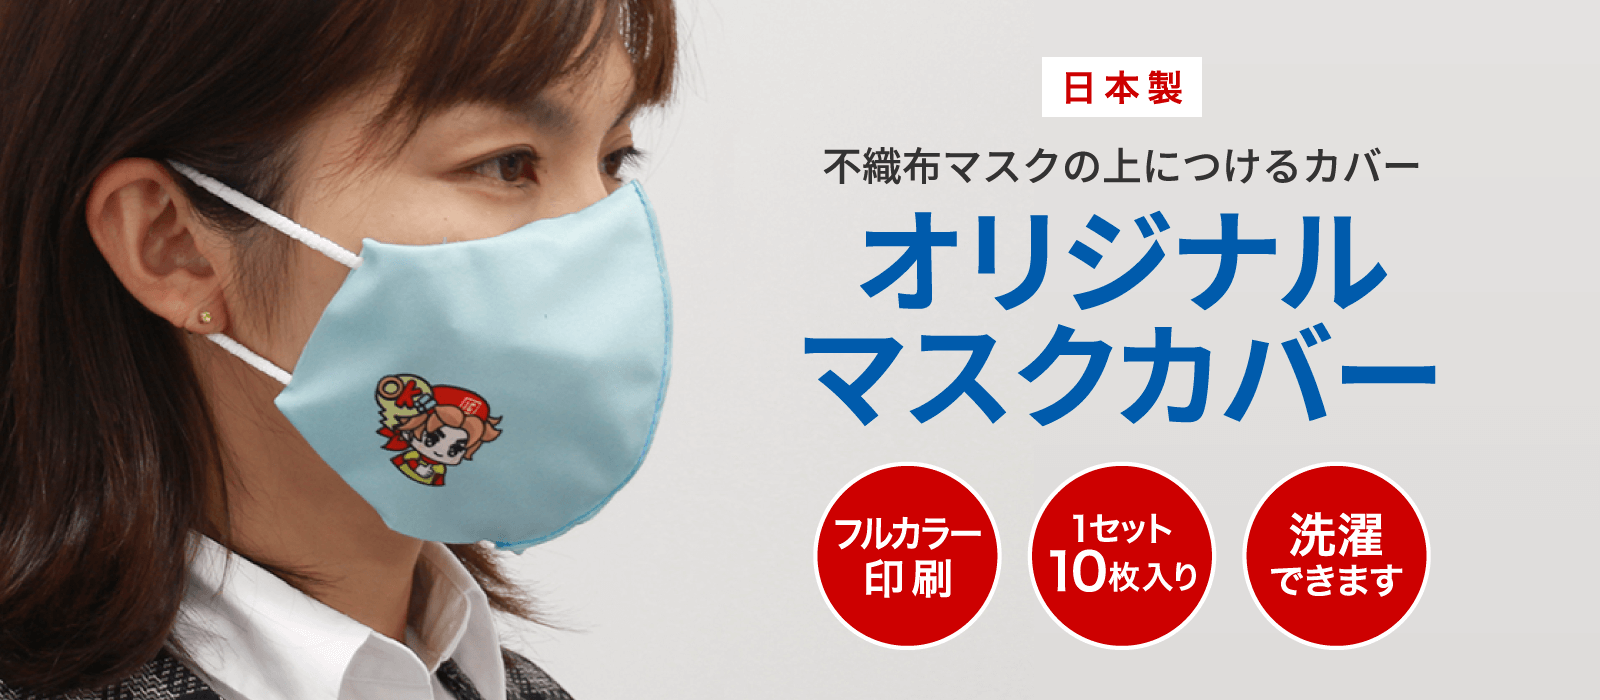 日本製 不織布マスクの上につけるカバー オリジナルマスクカバー フルカラー印刷・1セット10枚入り・洗濯できます